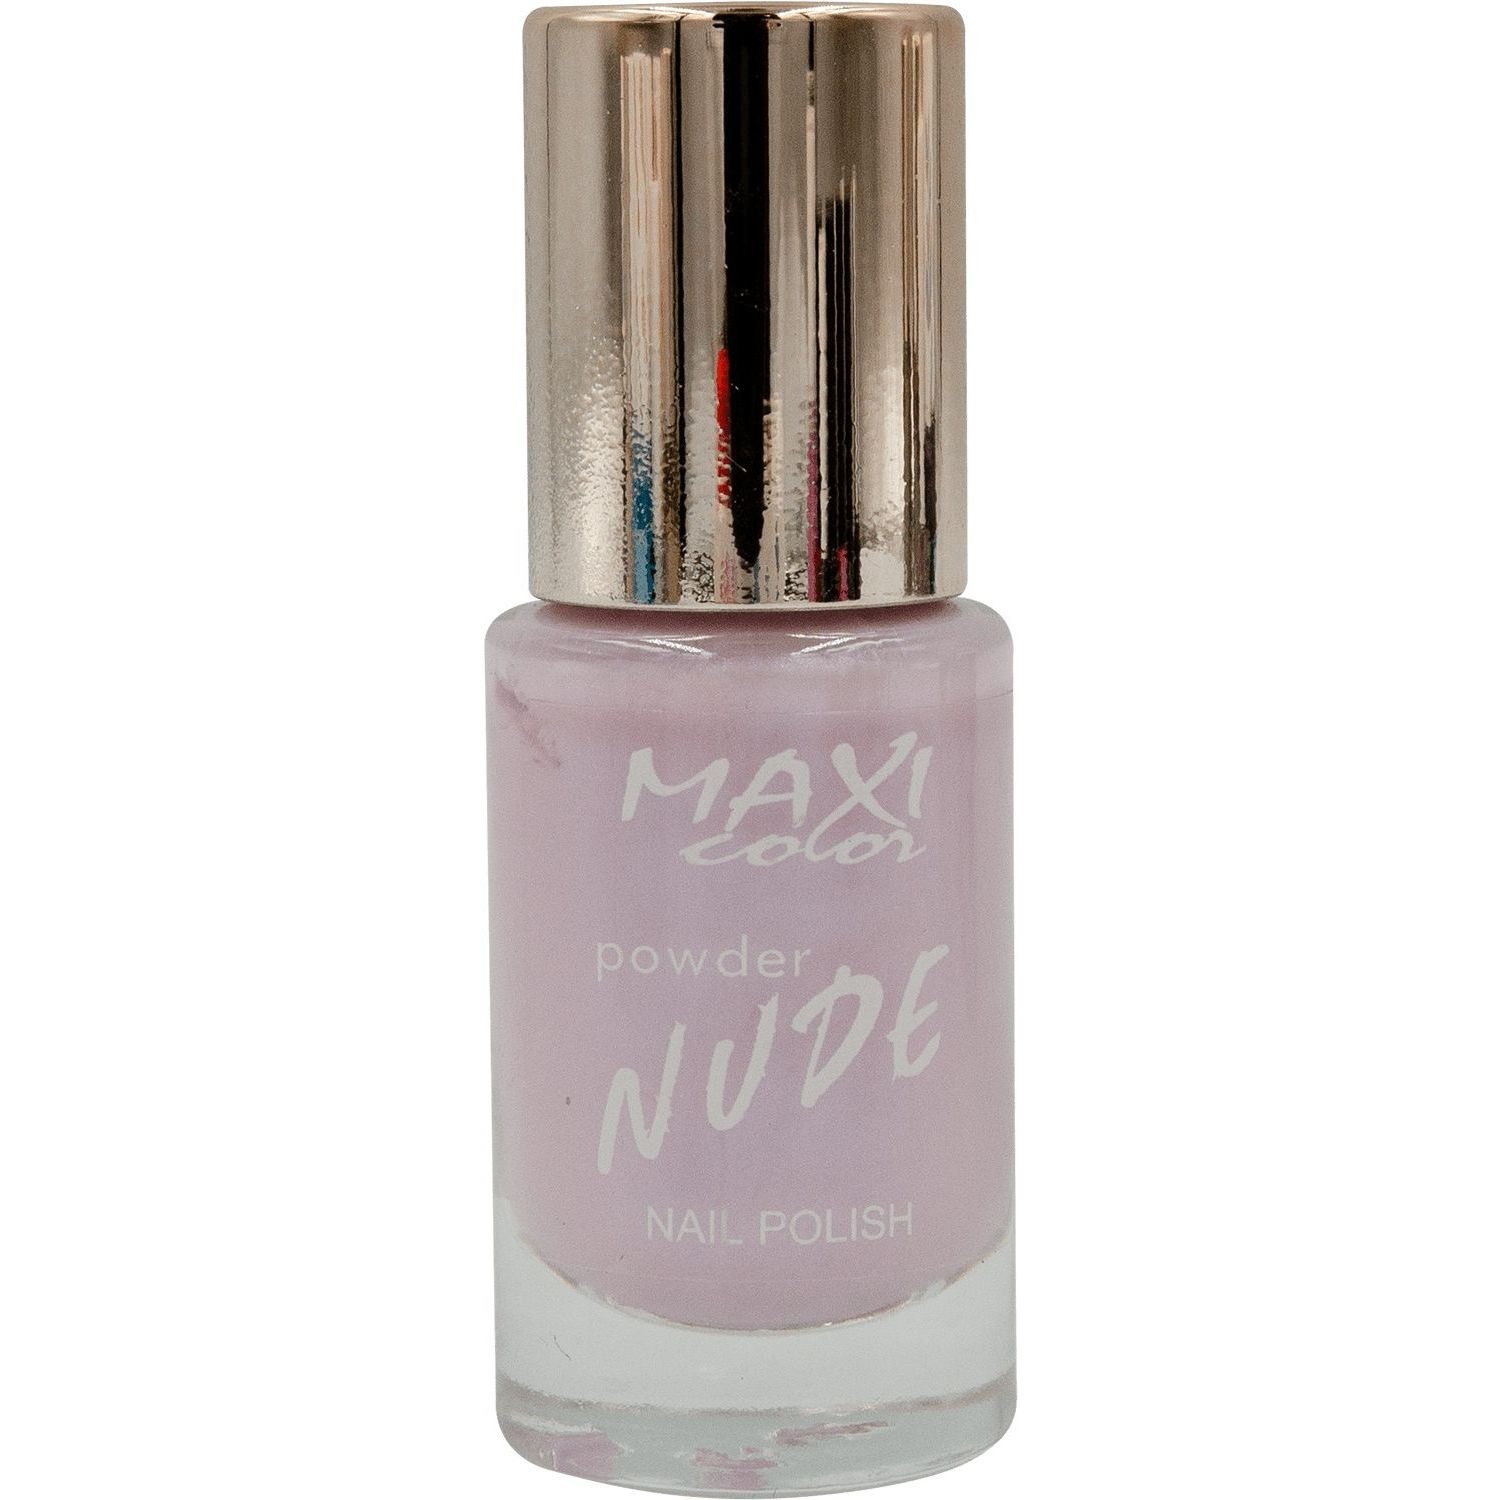 Лак для ногтей Maxi Color Powder Nude тон 05, 10 мл - фото 1